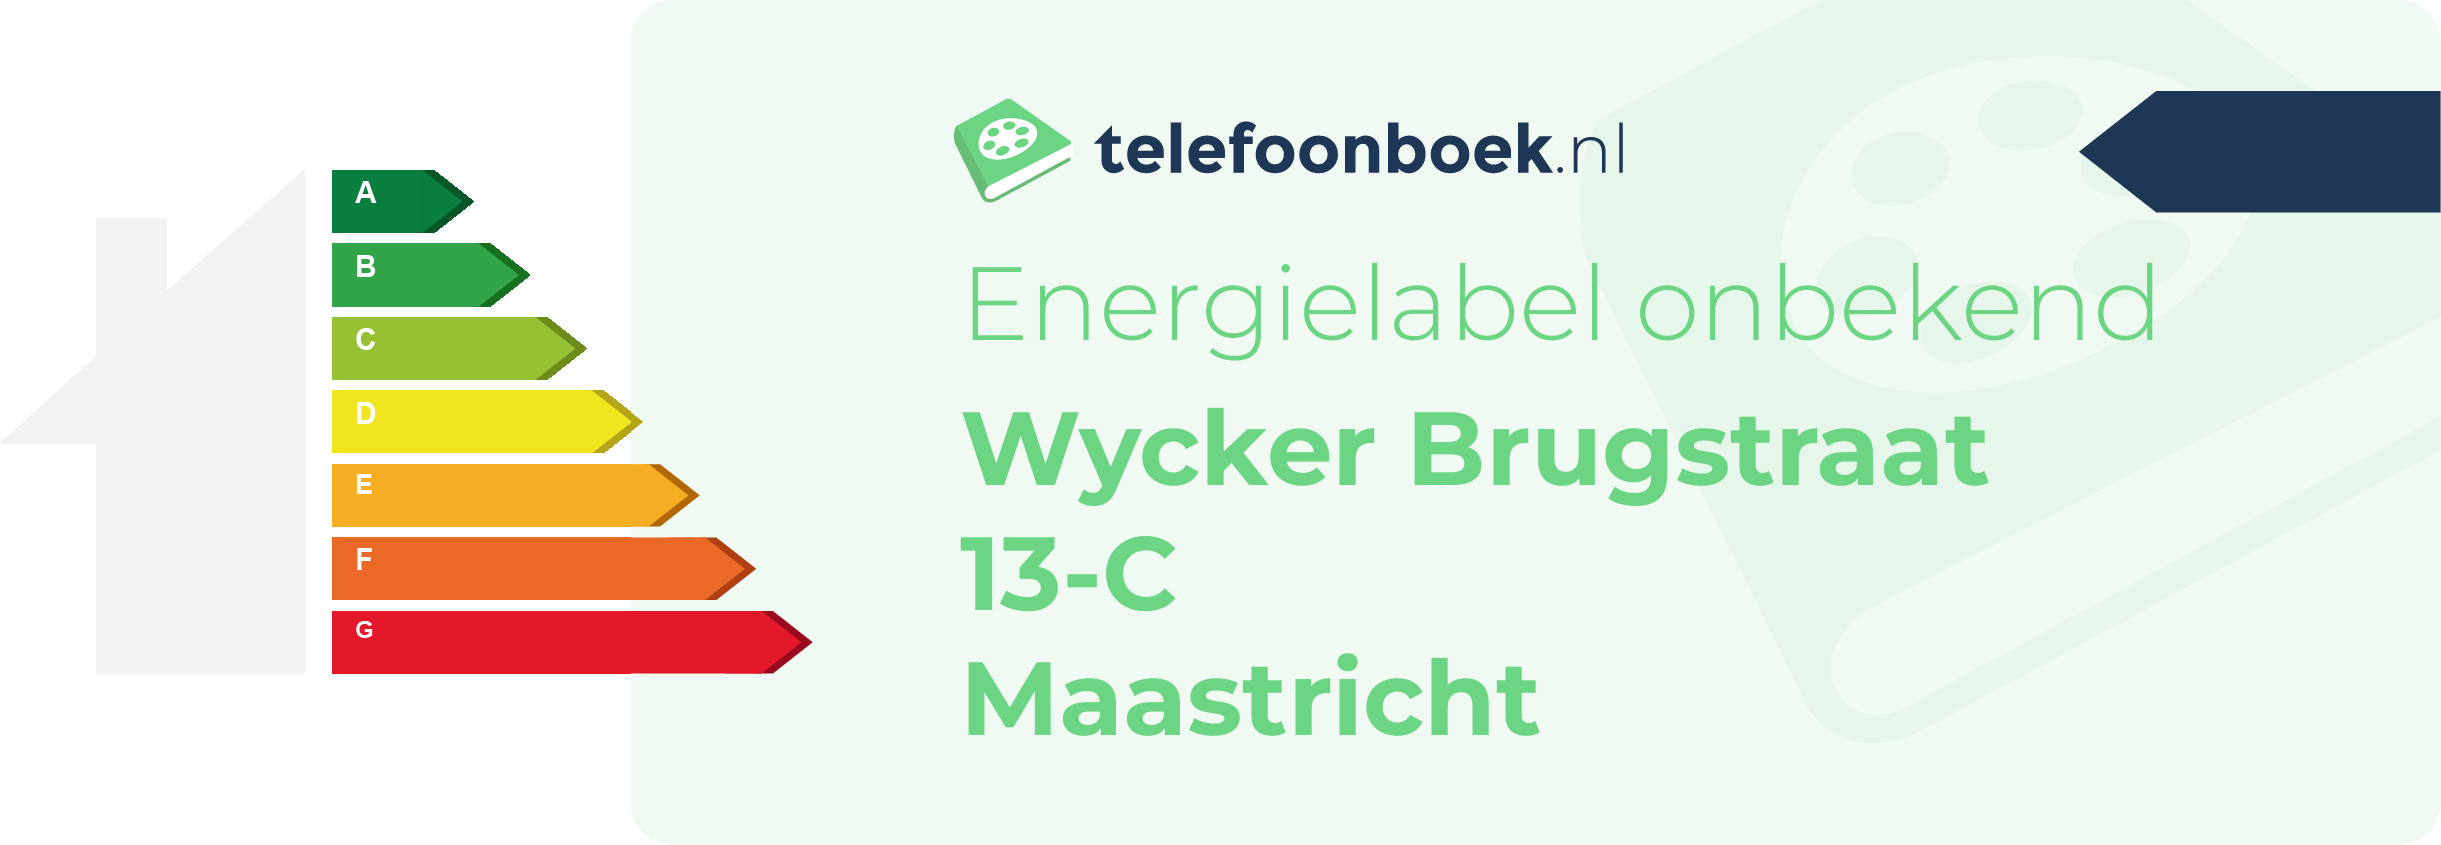 Energielabel Wycker Brugstraat 13-C Maastricht